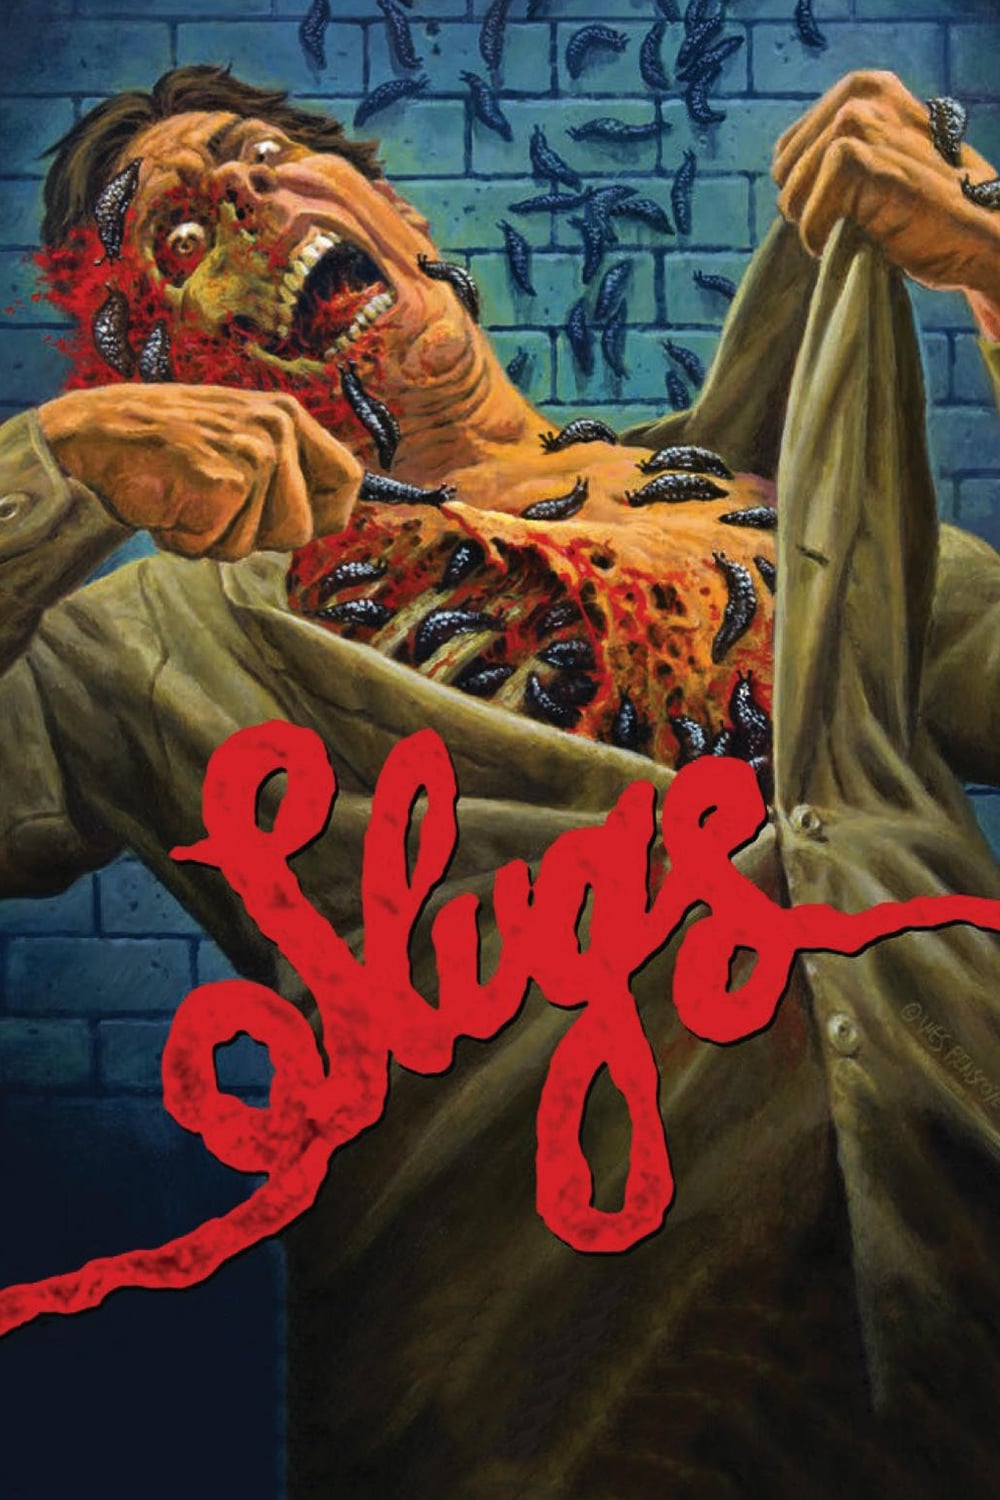 Slugs (1988)